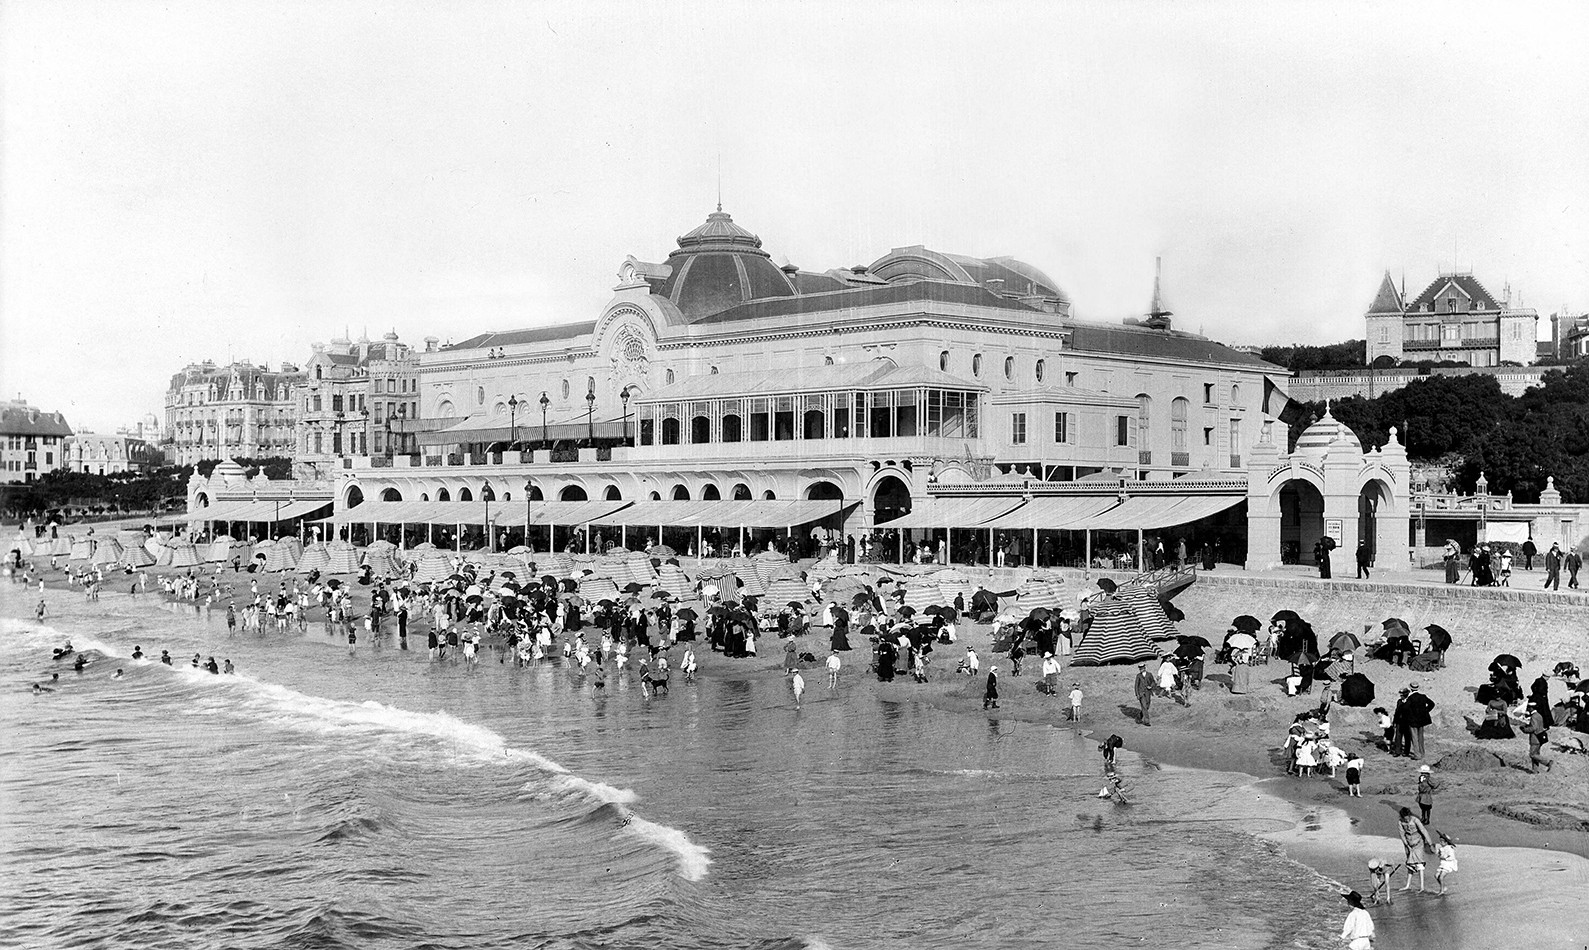 [UN DÉVELOPPEMENT URBAIN LIÉ A LA QUÊTE D'EMBRUNS] Le casino municipal et les bains de la grande plage de Biarritz, Photographie, vers 1901 © Neurdein / Roger-Viollet